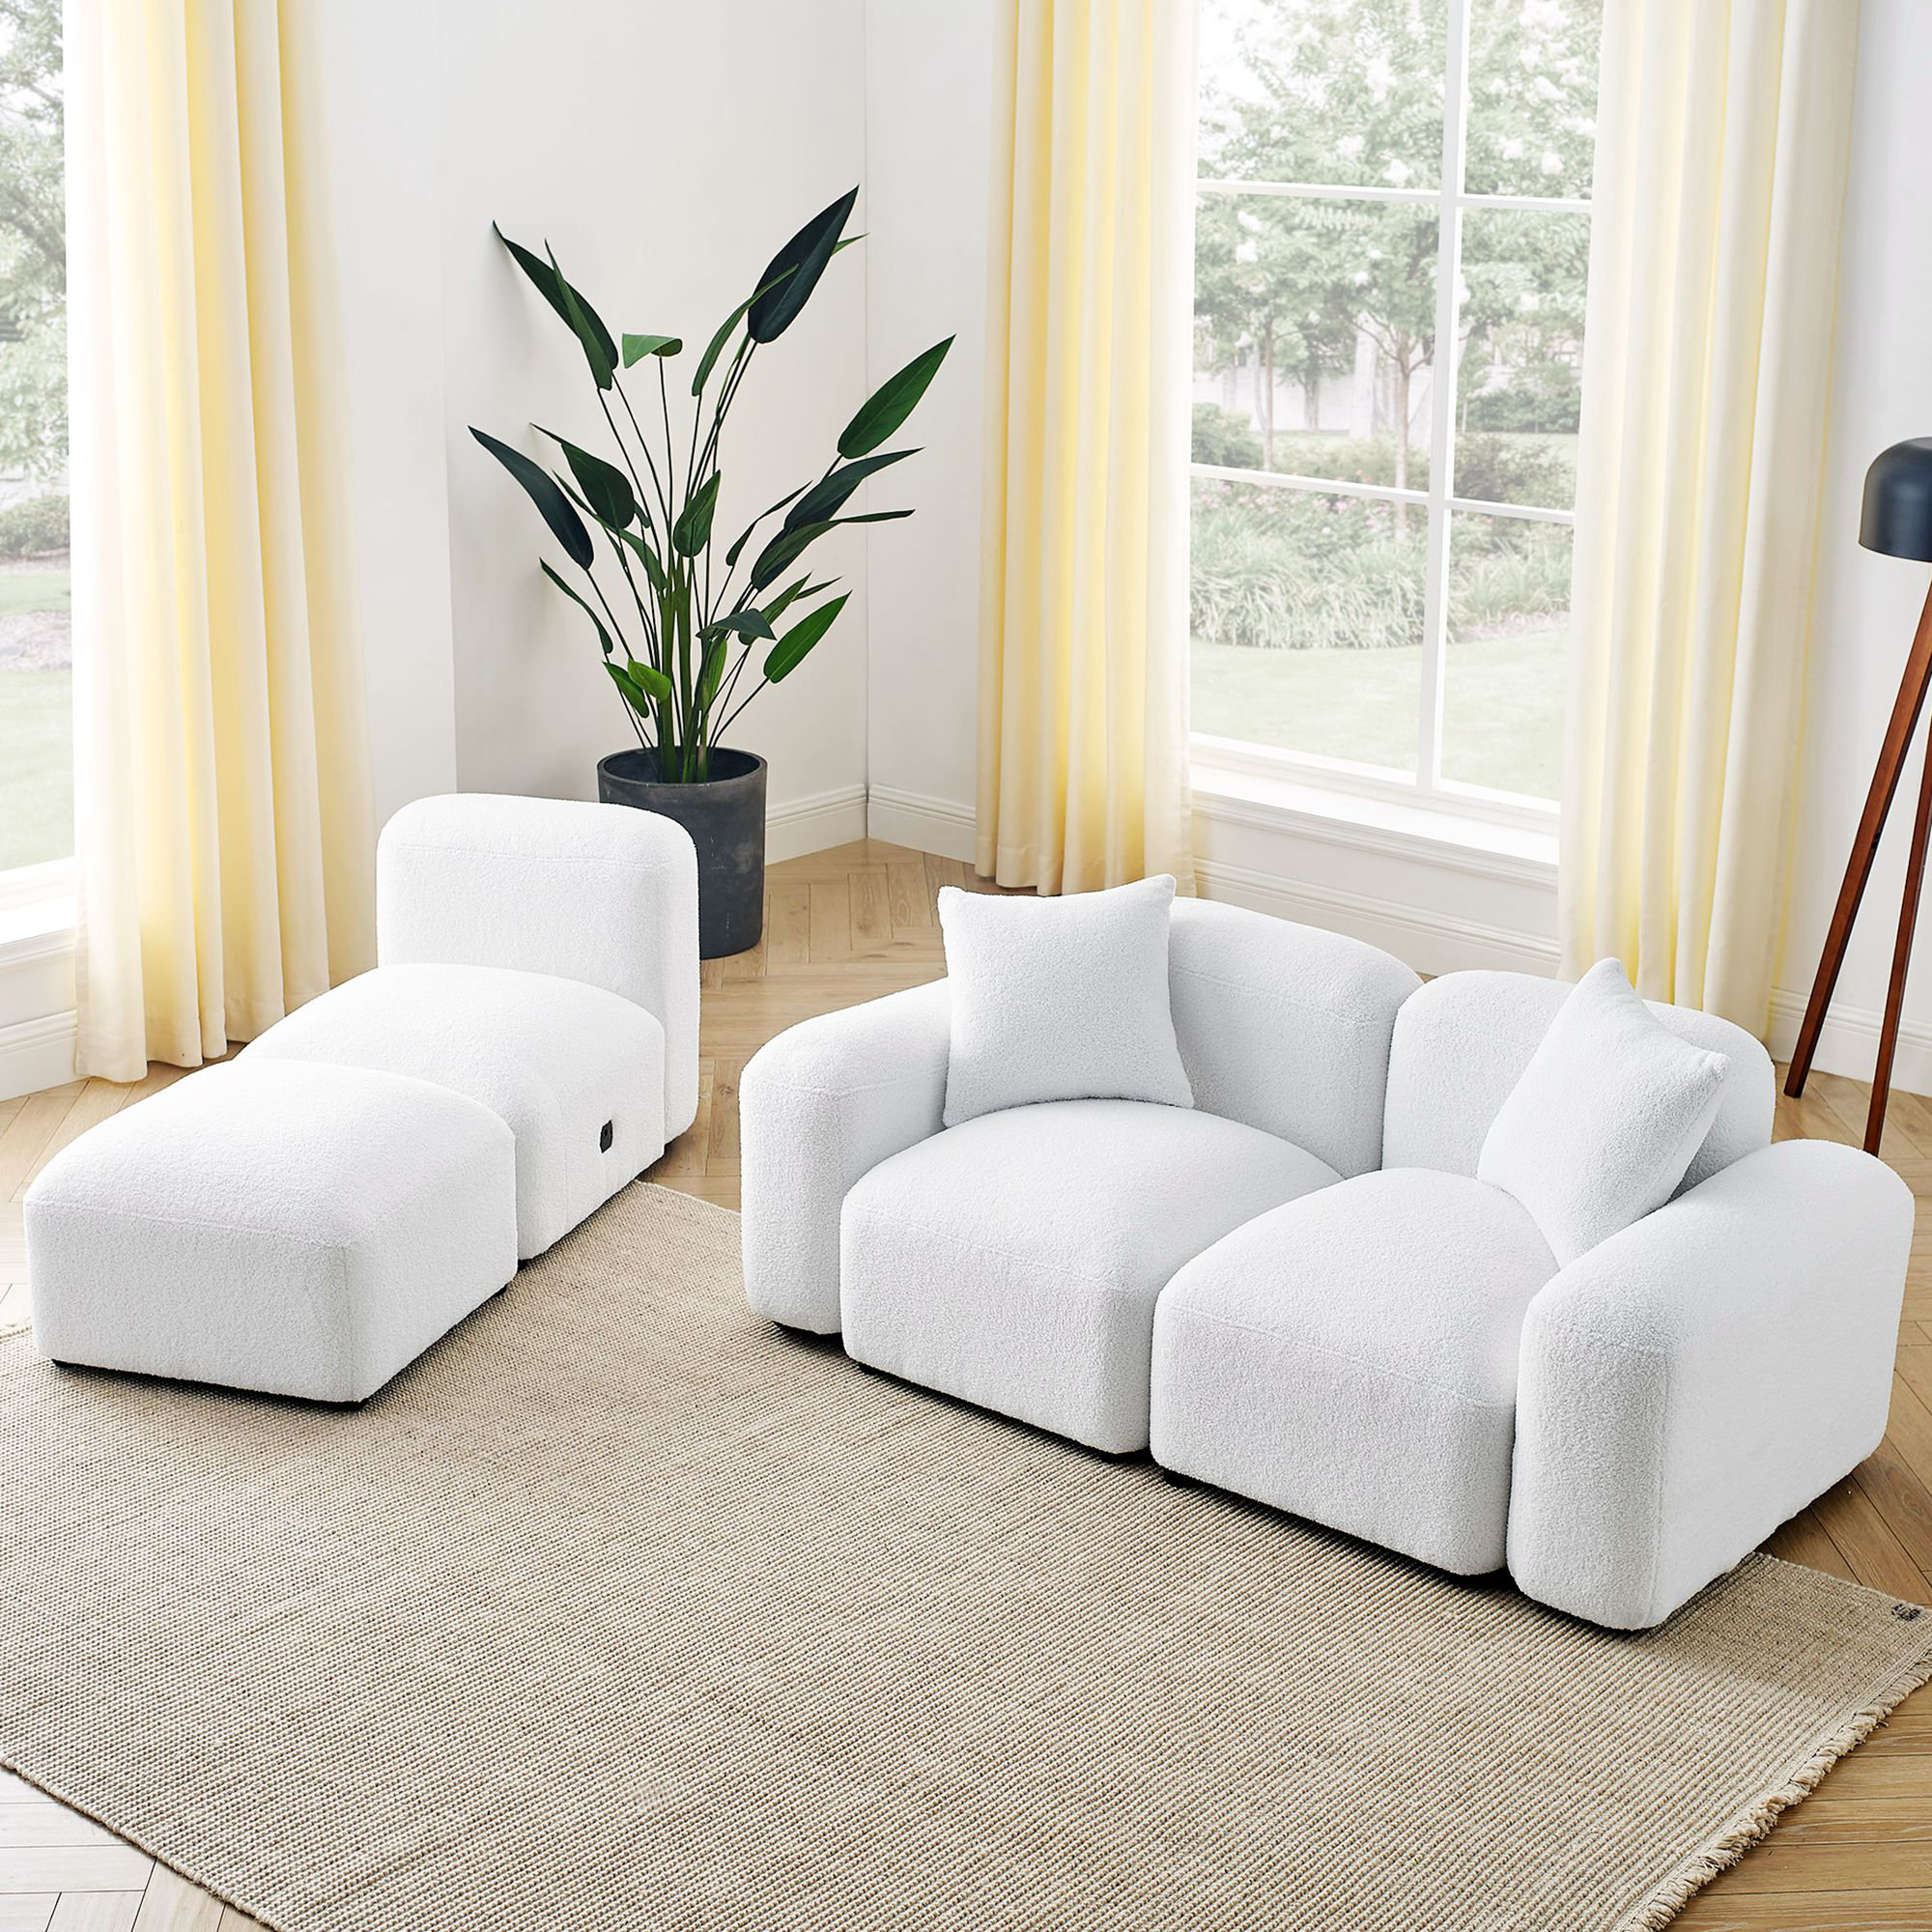 Builddecor 94.5'' Upholstered Sleeper Sofa